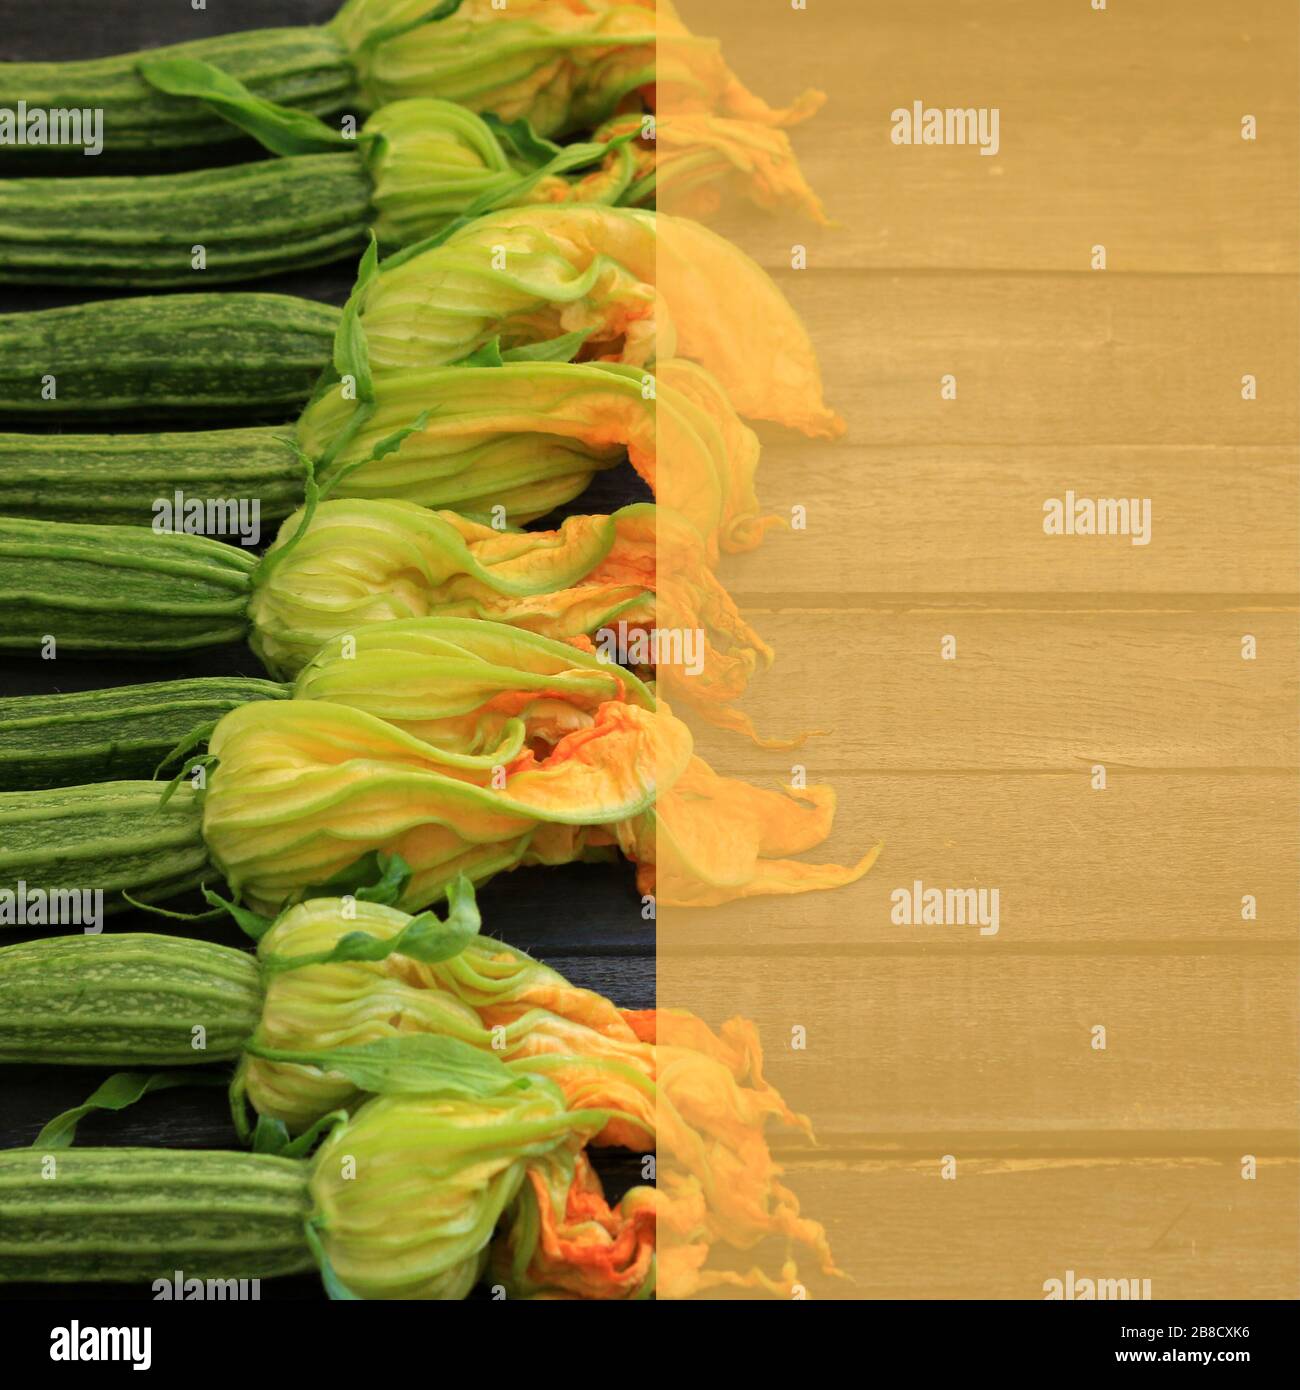 Concept de légumes alimentaires. Courgettes fraîches avec fleurs sur table en bois. Vue de dessus. Espace de copie couleur semi-trasnparent. Banque D'Images